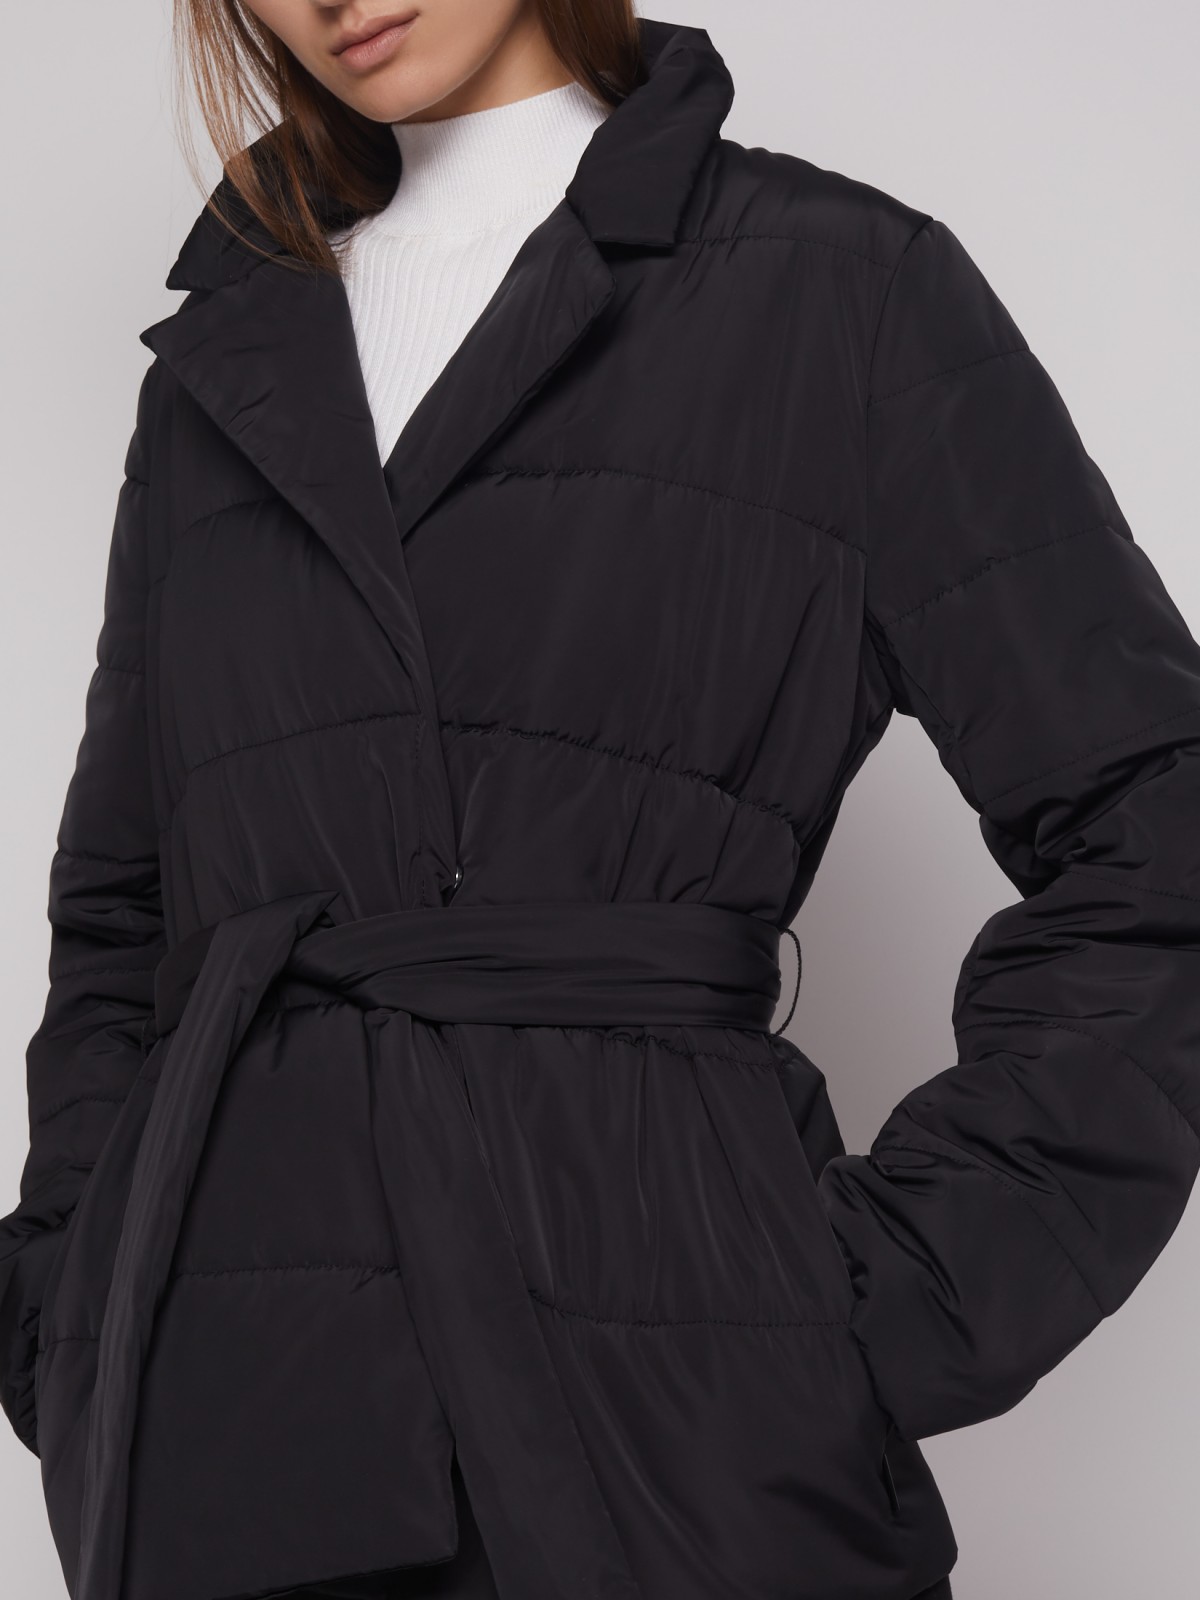 Тёплая куртка с поясом zolla 022335124334, цвет черный, размер XS - фото 4